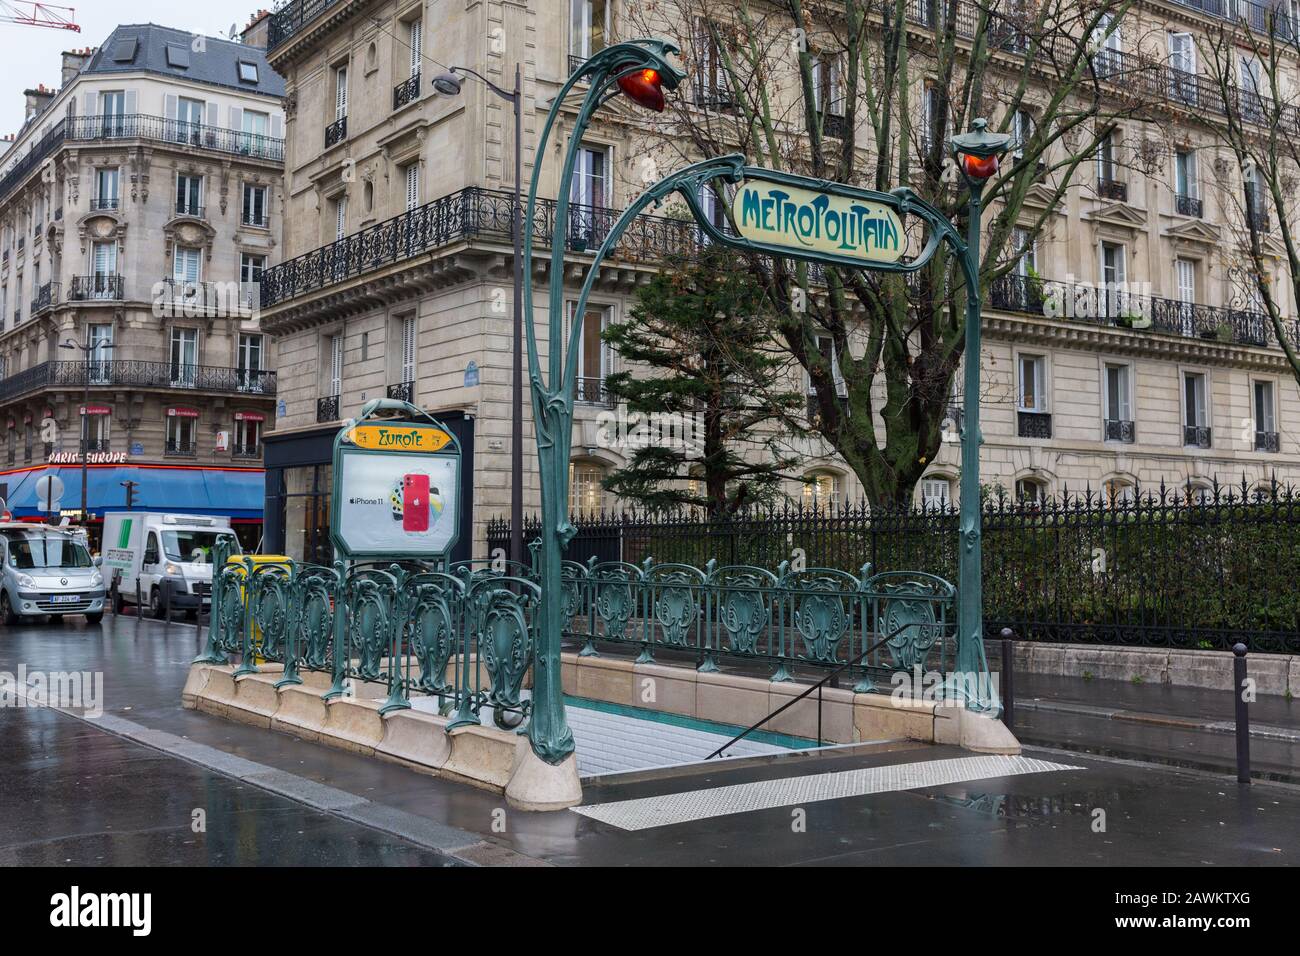 Eingang zum Metropolitain - Pariser U-Bahn-/U-Bahn-System. Die Gestaltung des Geländer um das Tor und das Schild oben wird Jugendstil genannt. Stockfoto